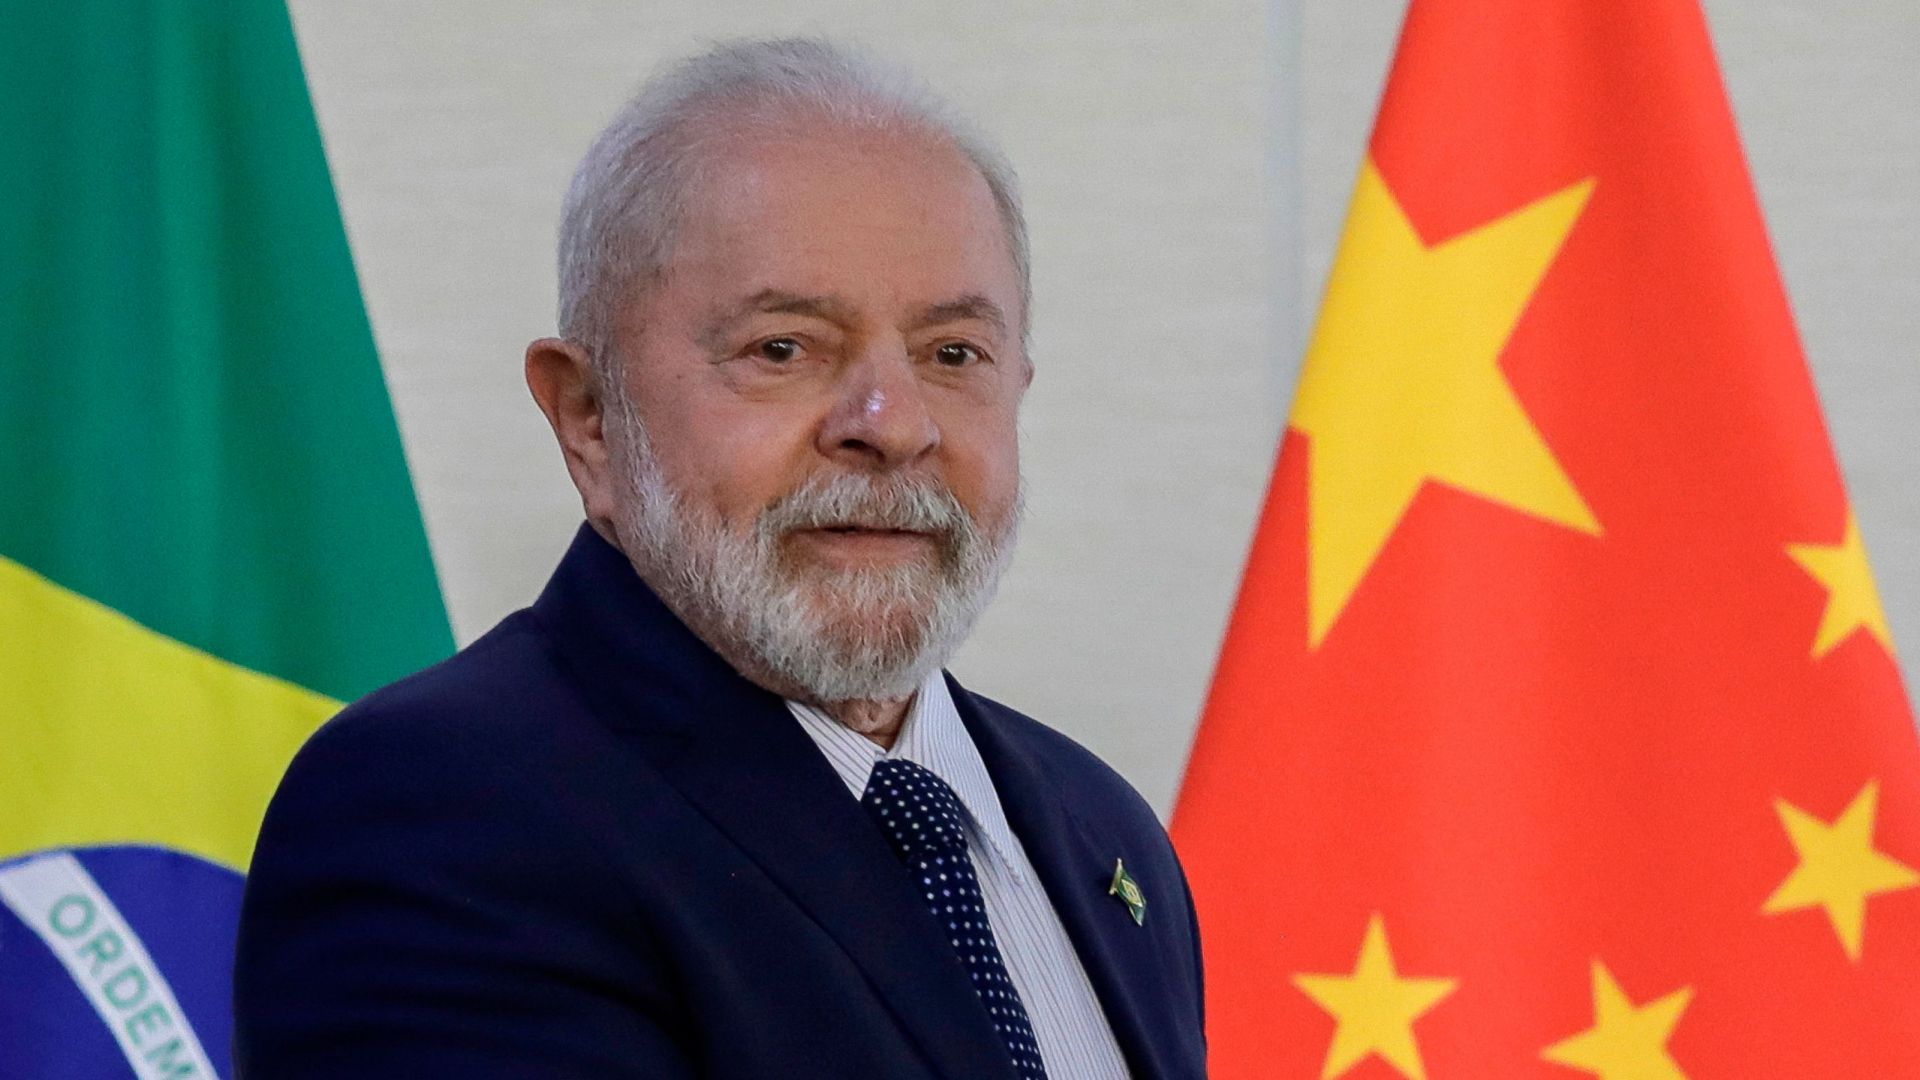 tagesschau.de - Lula bei Xi: "Reise von großer geopolitischer Relevanz"